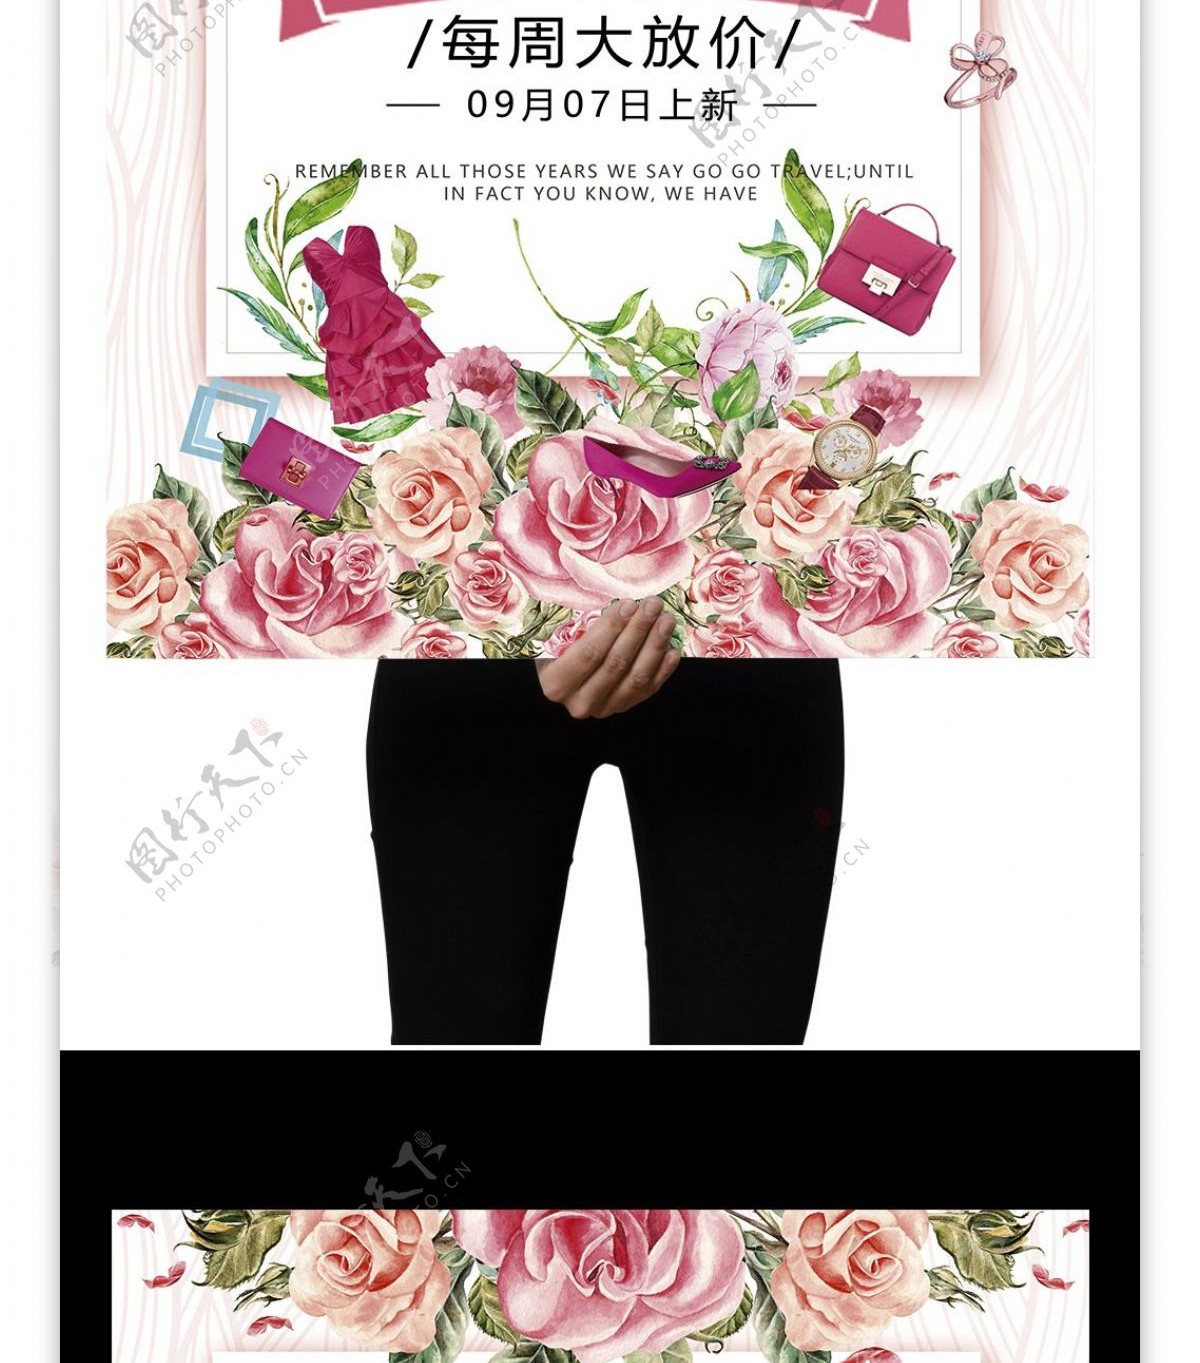 粉色系新品上市促销海报设计模板